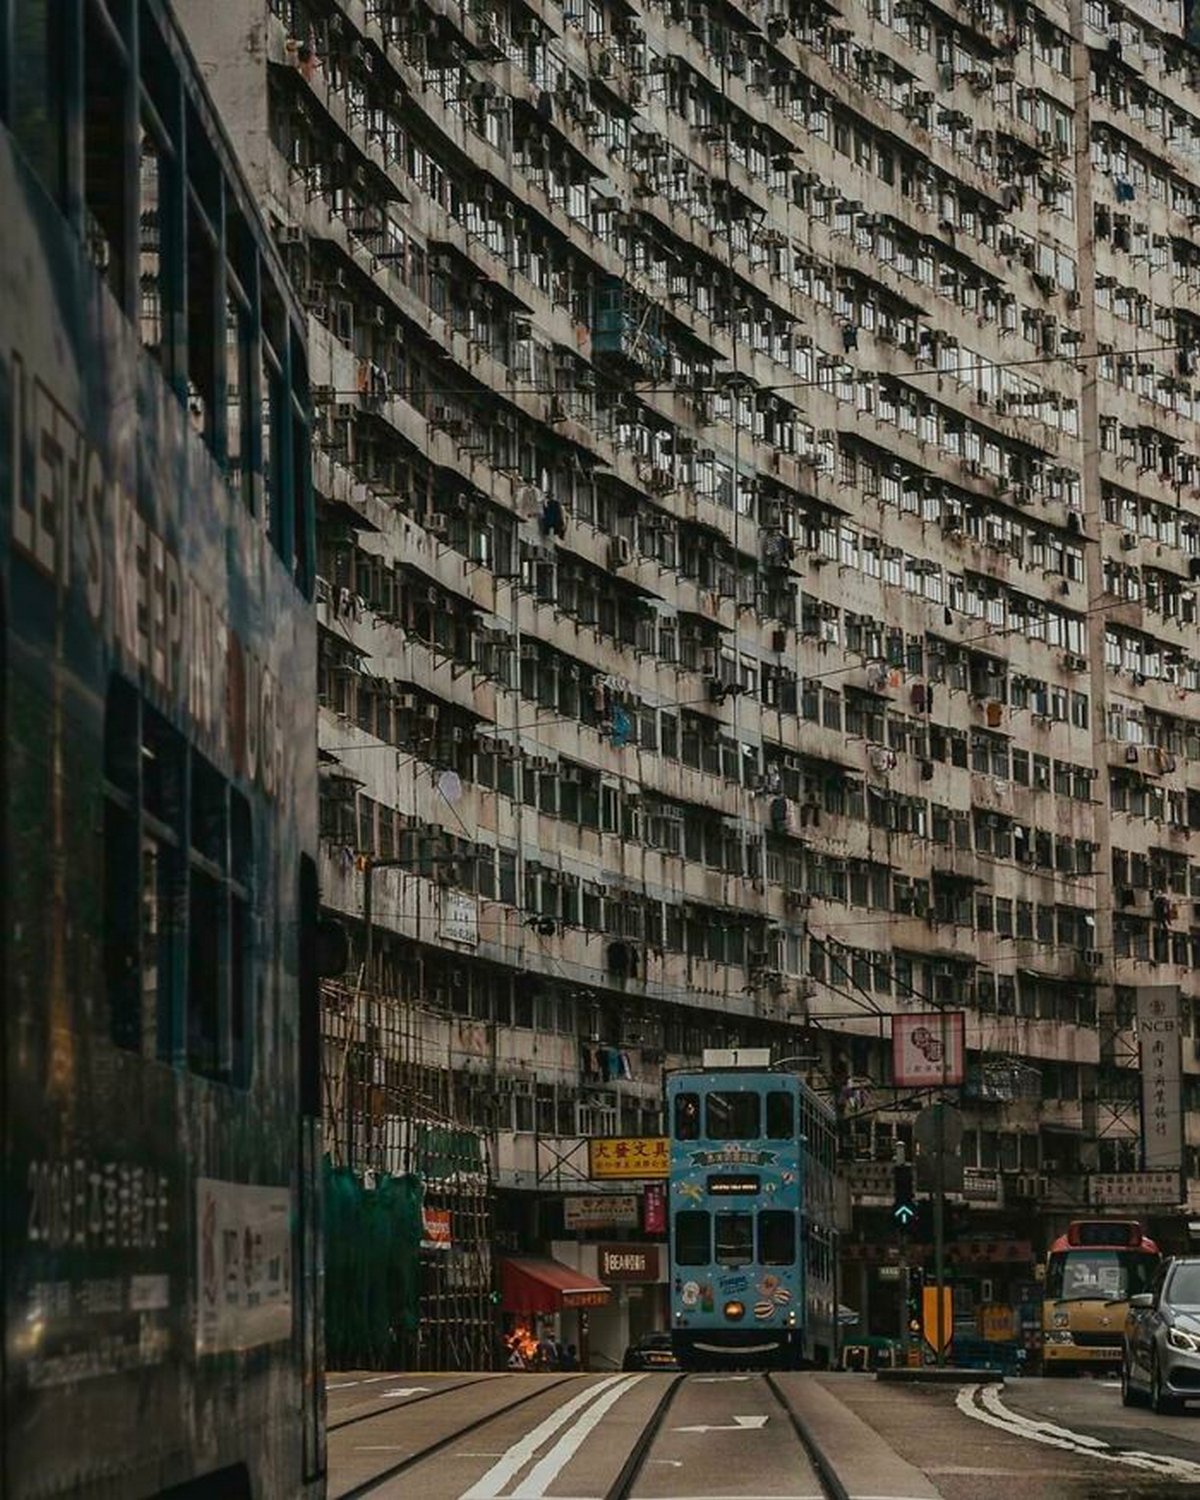 Ces exemples d’« enfer urbain » qui ressemblent à un film dystopique sont malheureusement réels